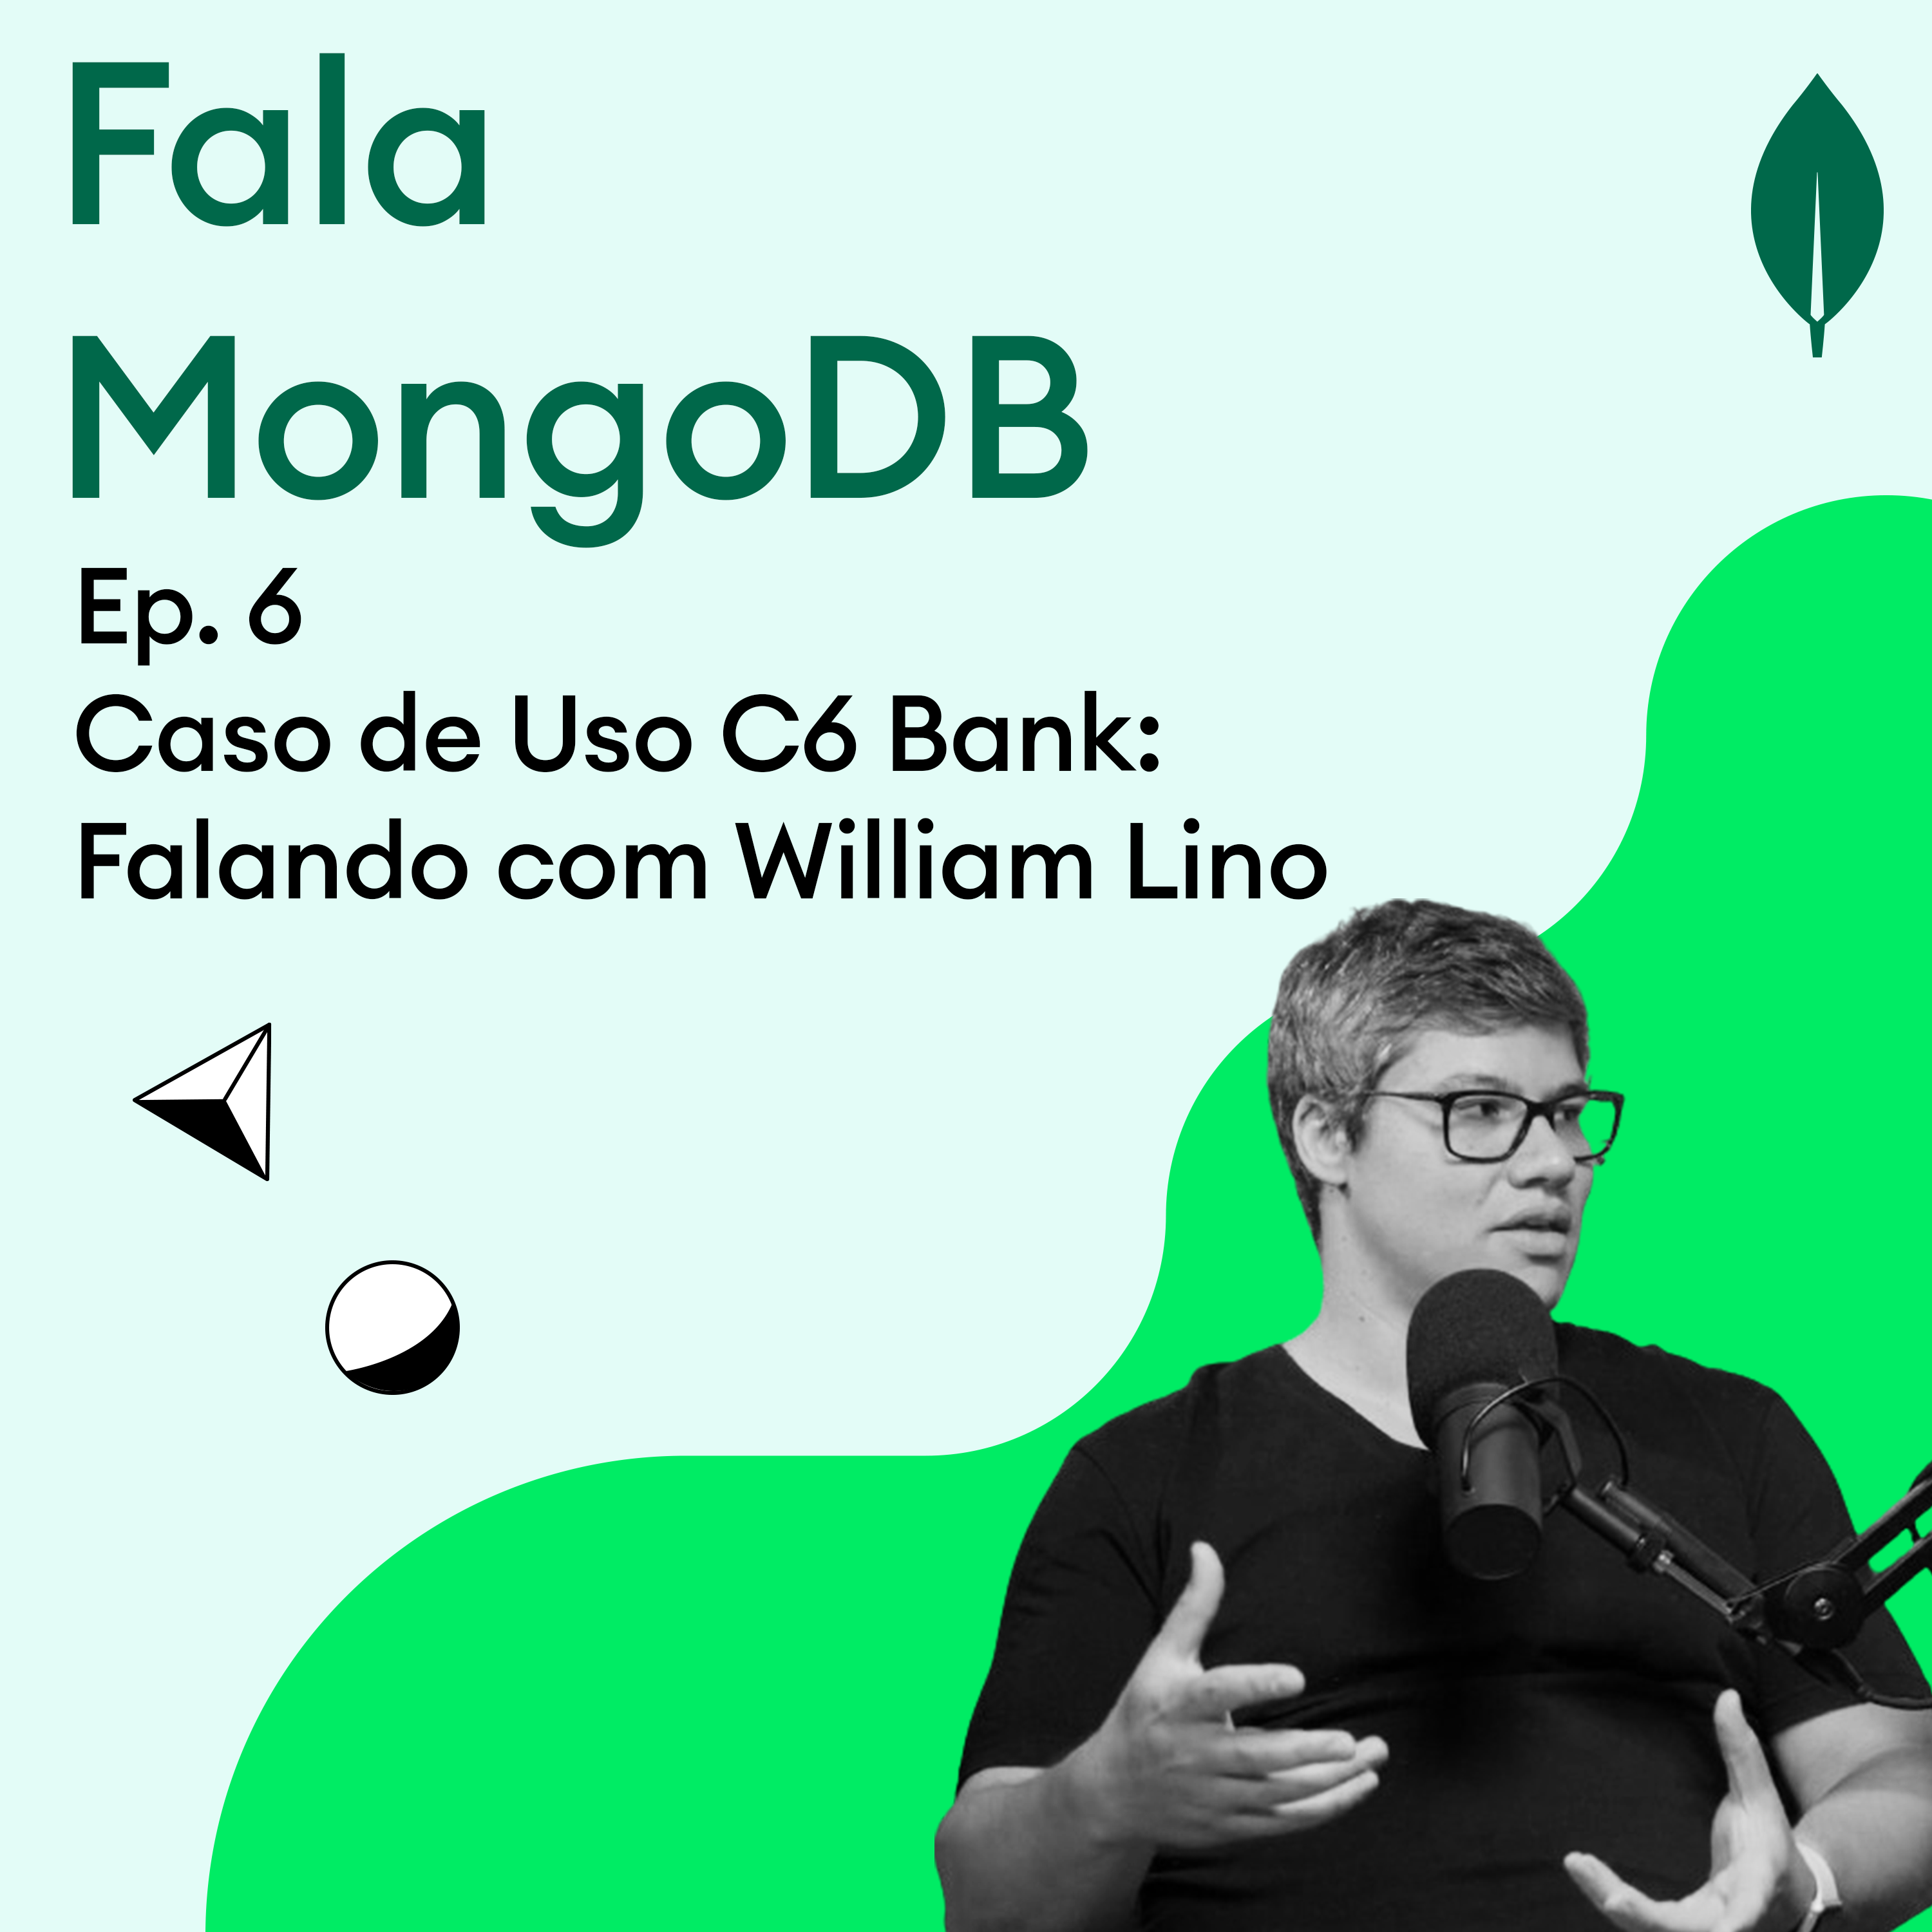 Fala MongoDB Ep.6 Caso de Uso C6 Bank: Falando com William Lino